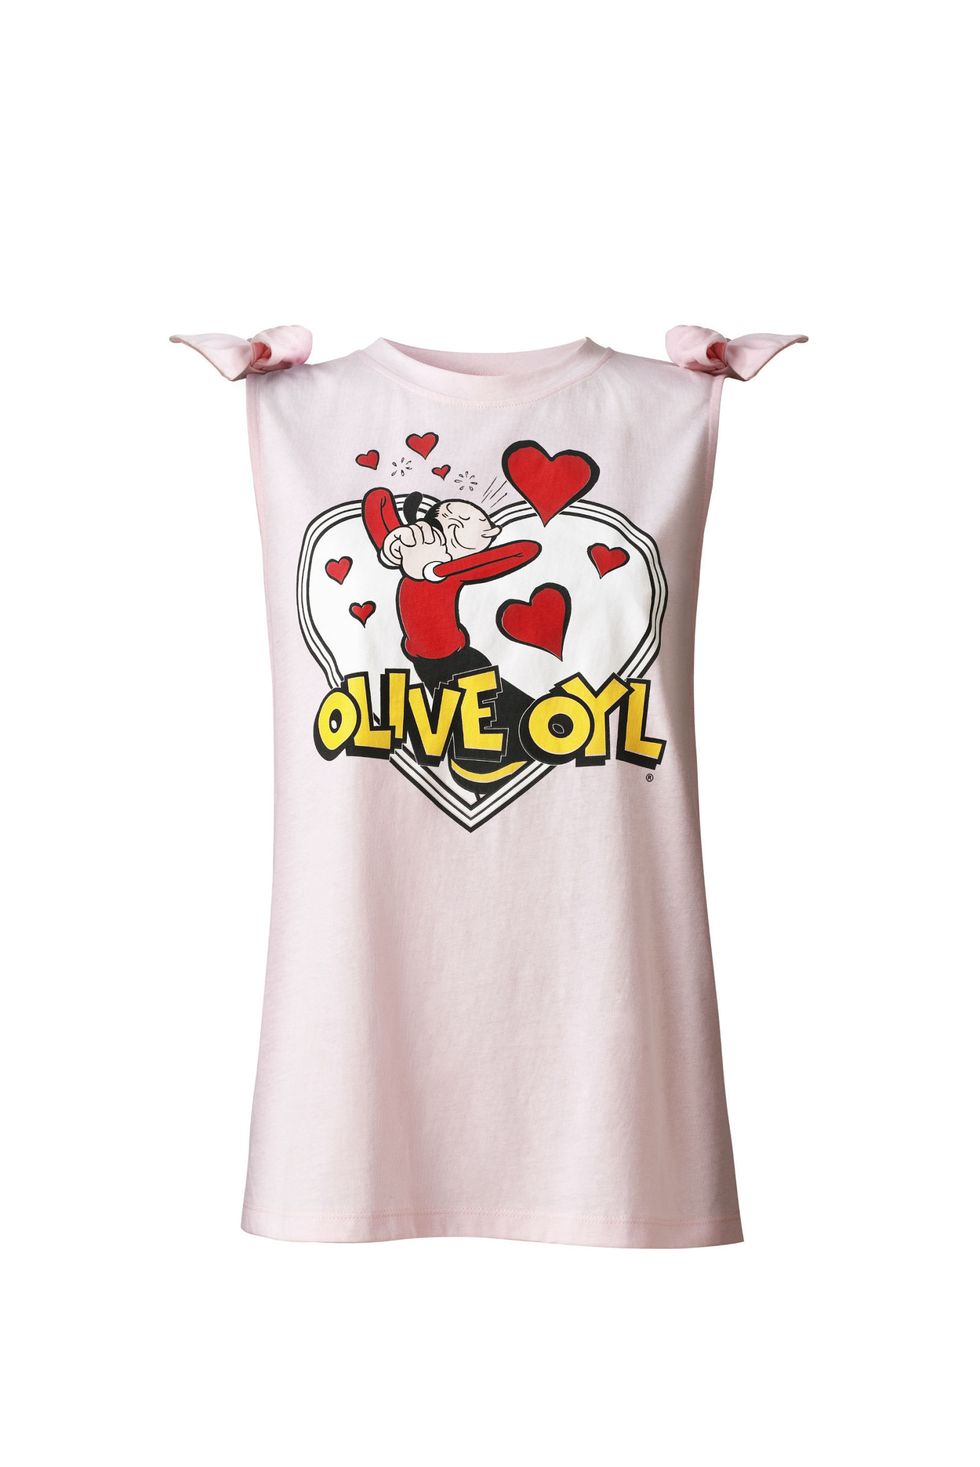 Regali San Valentino per fashion victim: la t-shirt pop di Anyie By